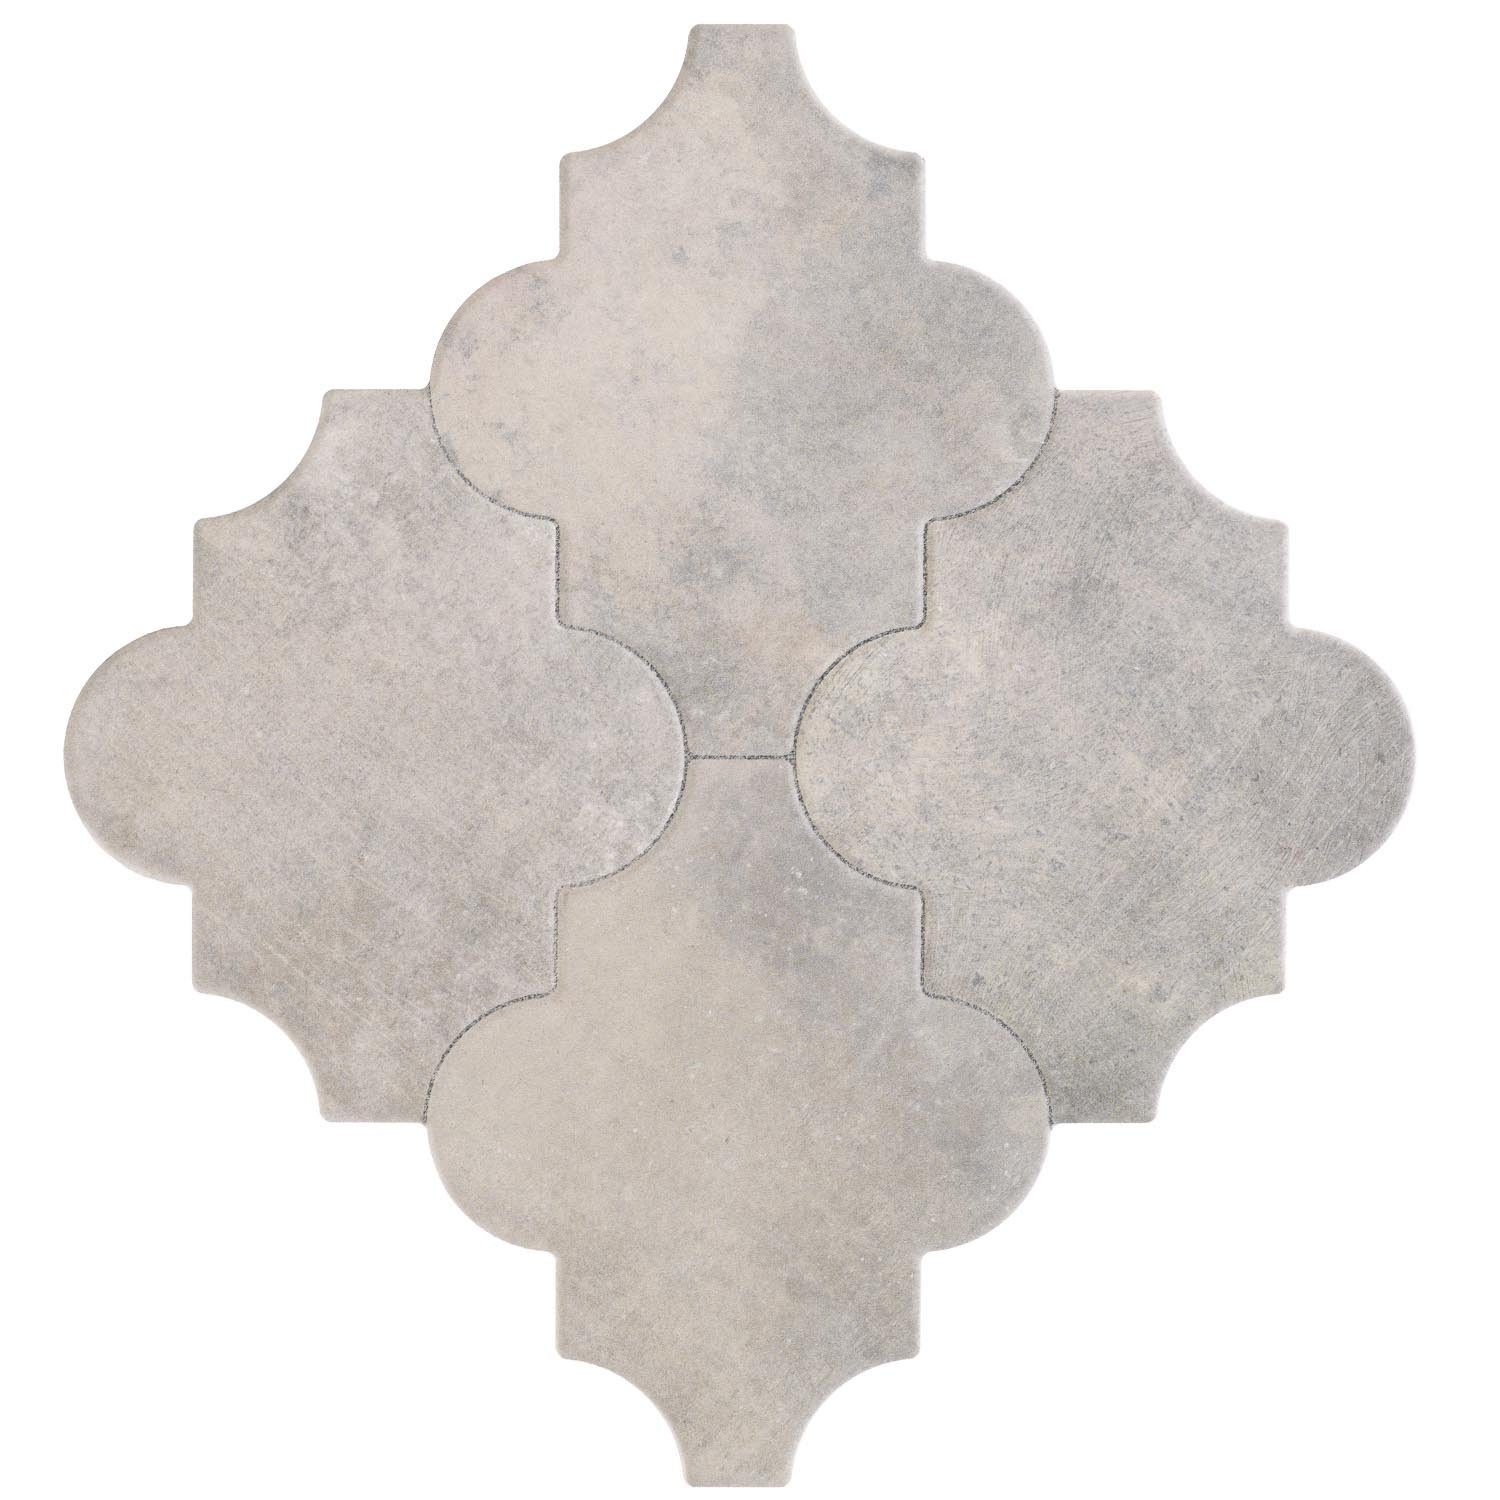 Marokkanische Casa Bodenfliese FL2037 Arabesque mit für Fliesen Betonoptik, Bunt, und 45x45, Wand, Form Risha & Boden 1m² Keramikfliesen, Moro Keramik Orientalische